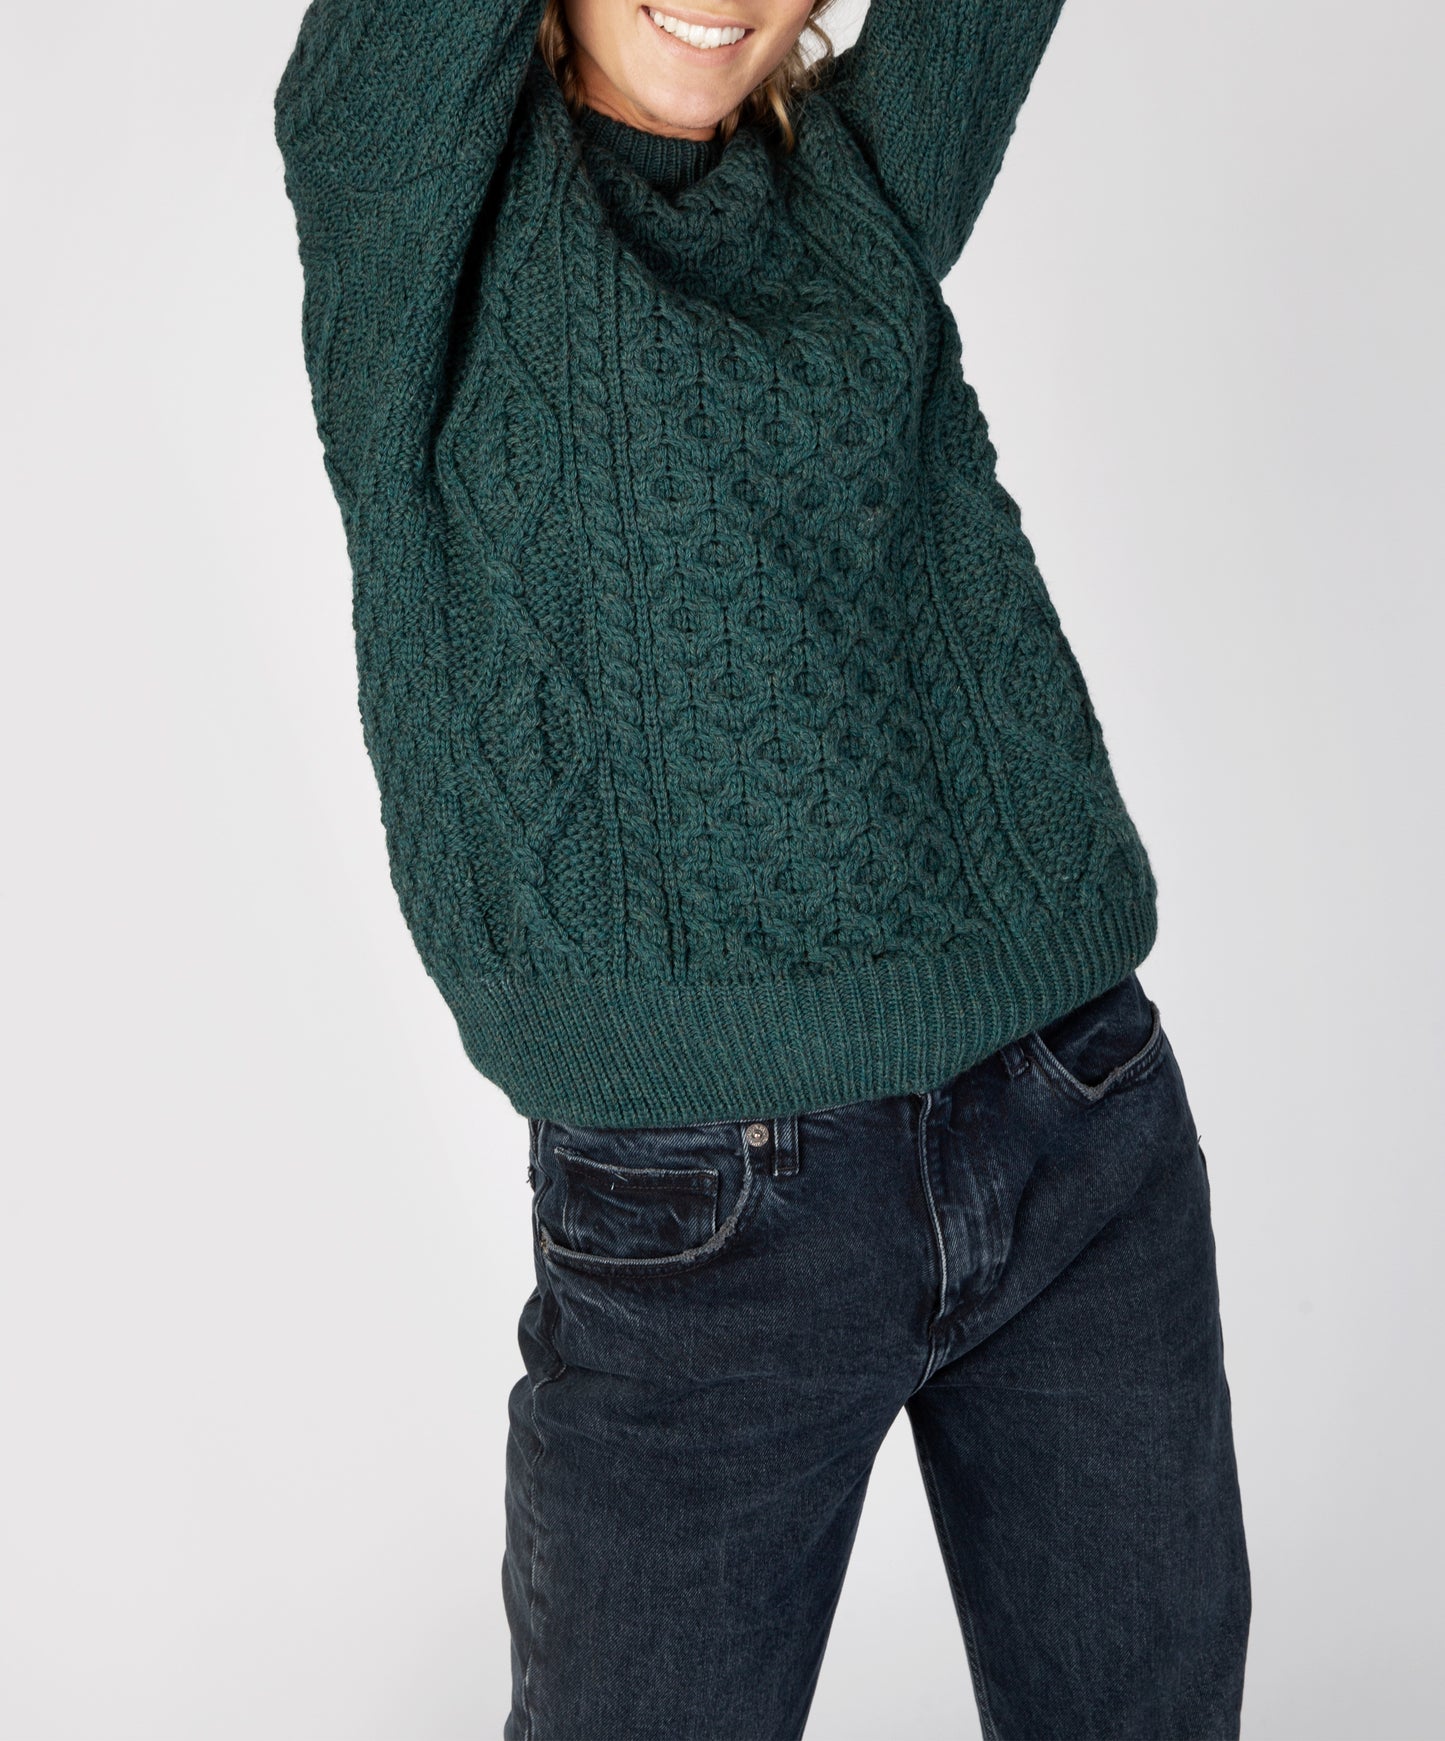 IrelandsEye Knitwear Fearnóg Womens Aran Crew Neck Sweater Evergreen